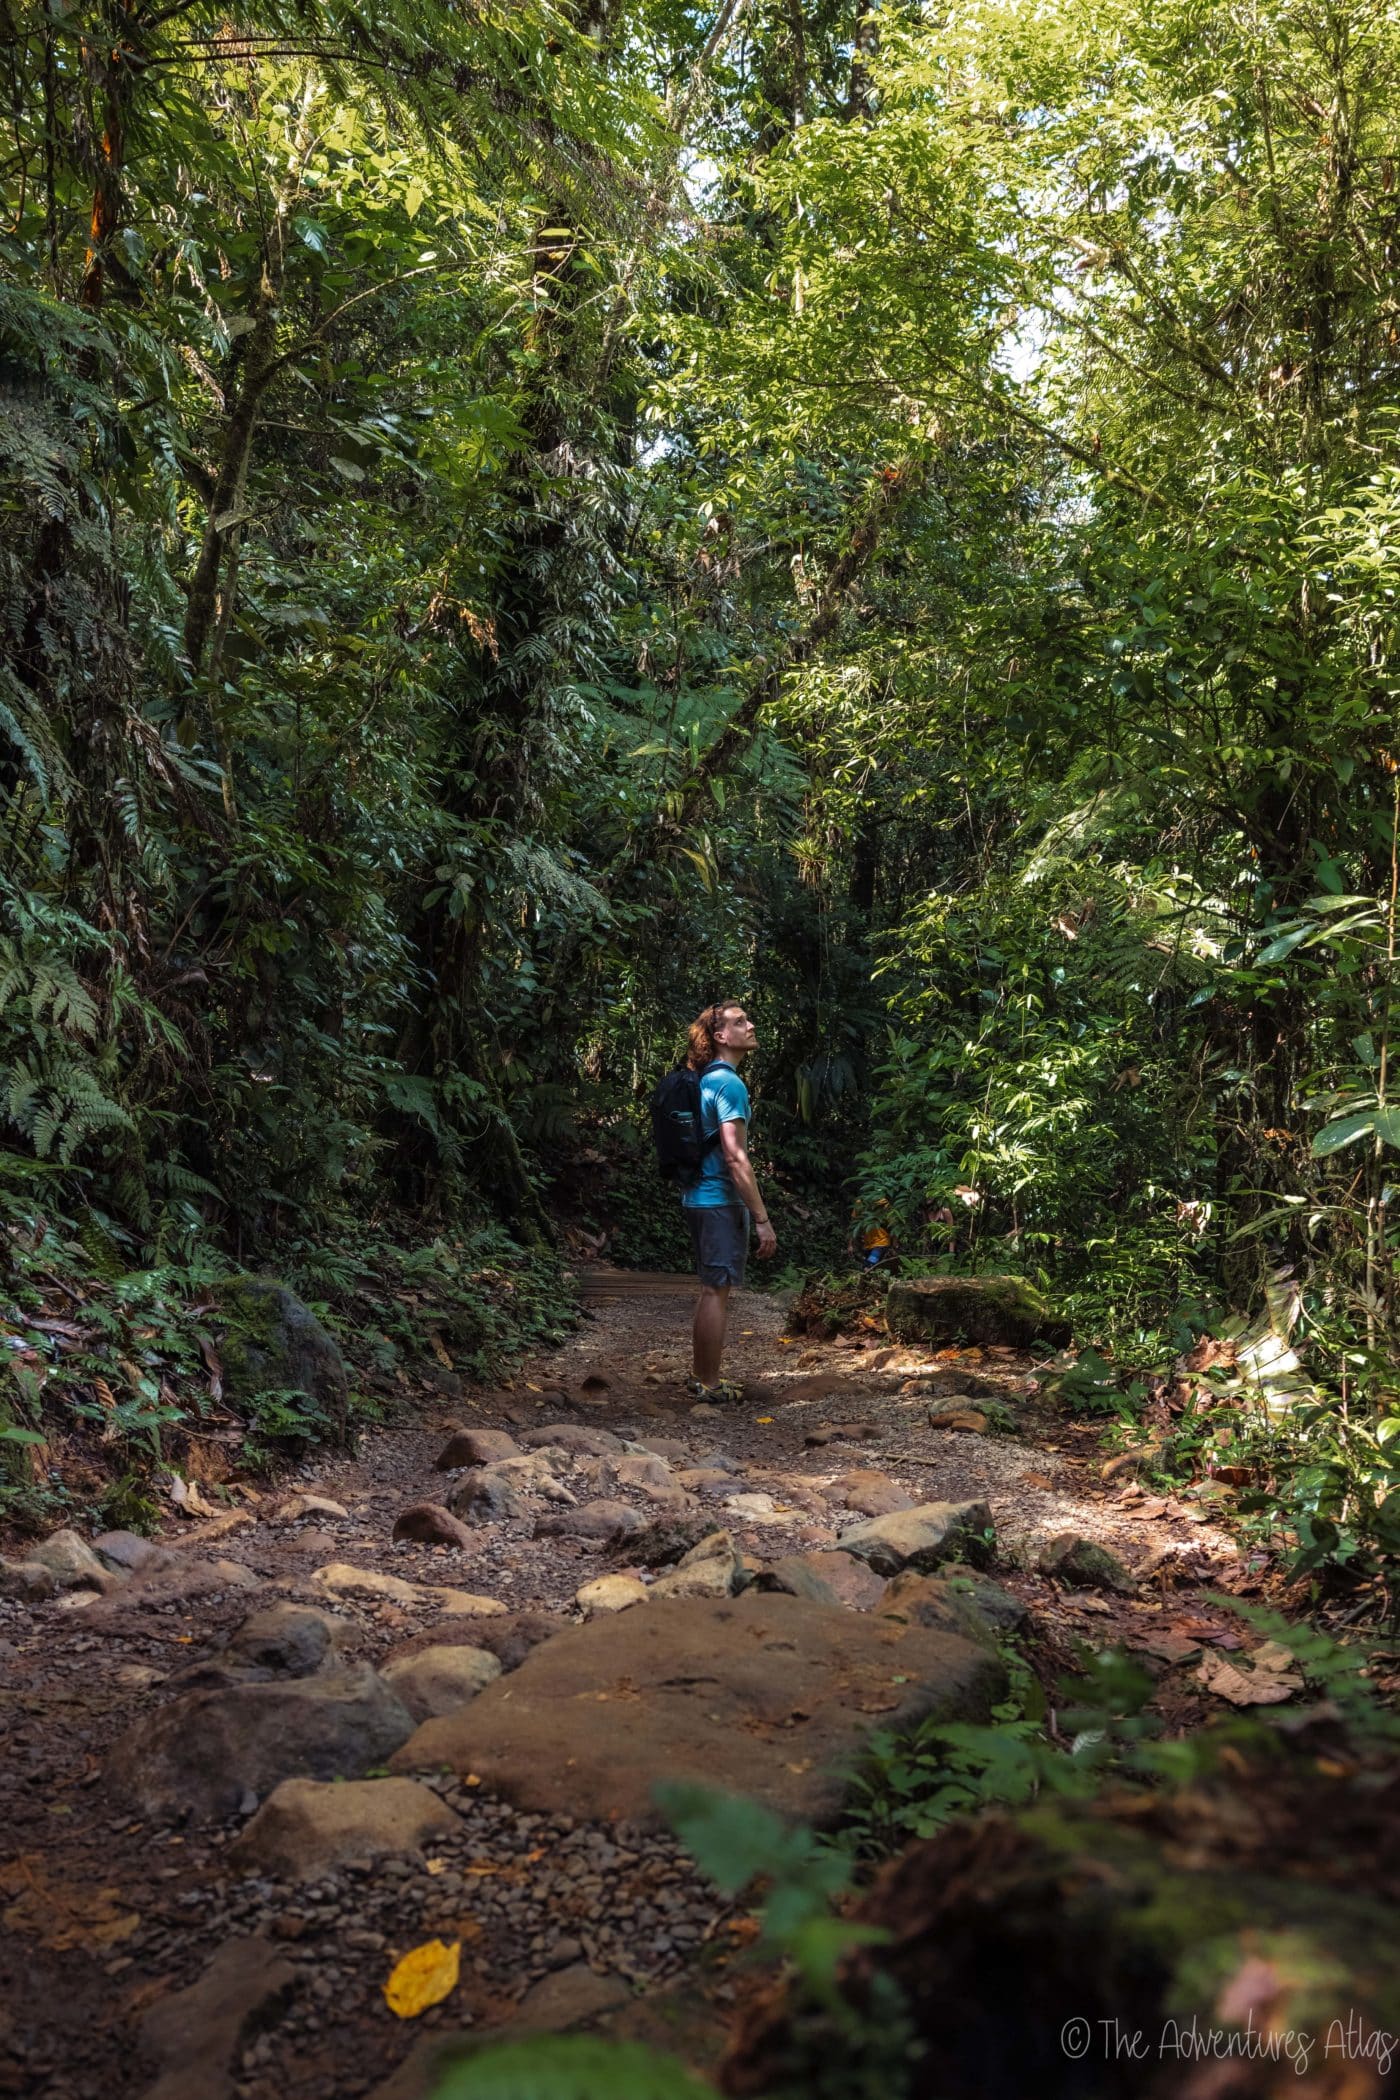 Hiking in the jungle in Costa Rica